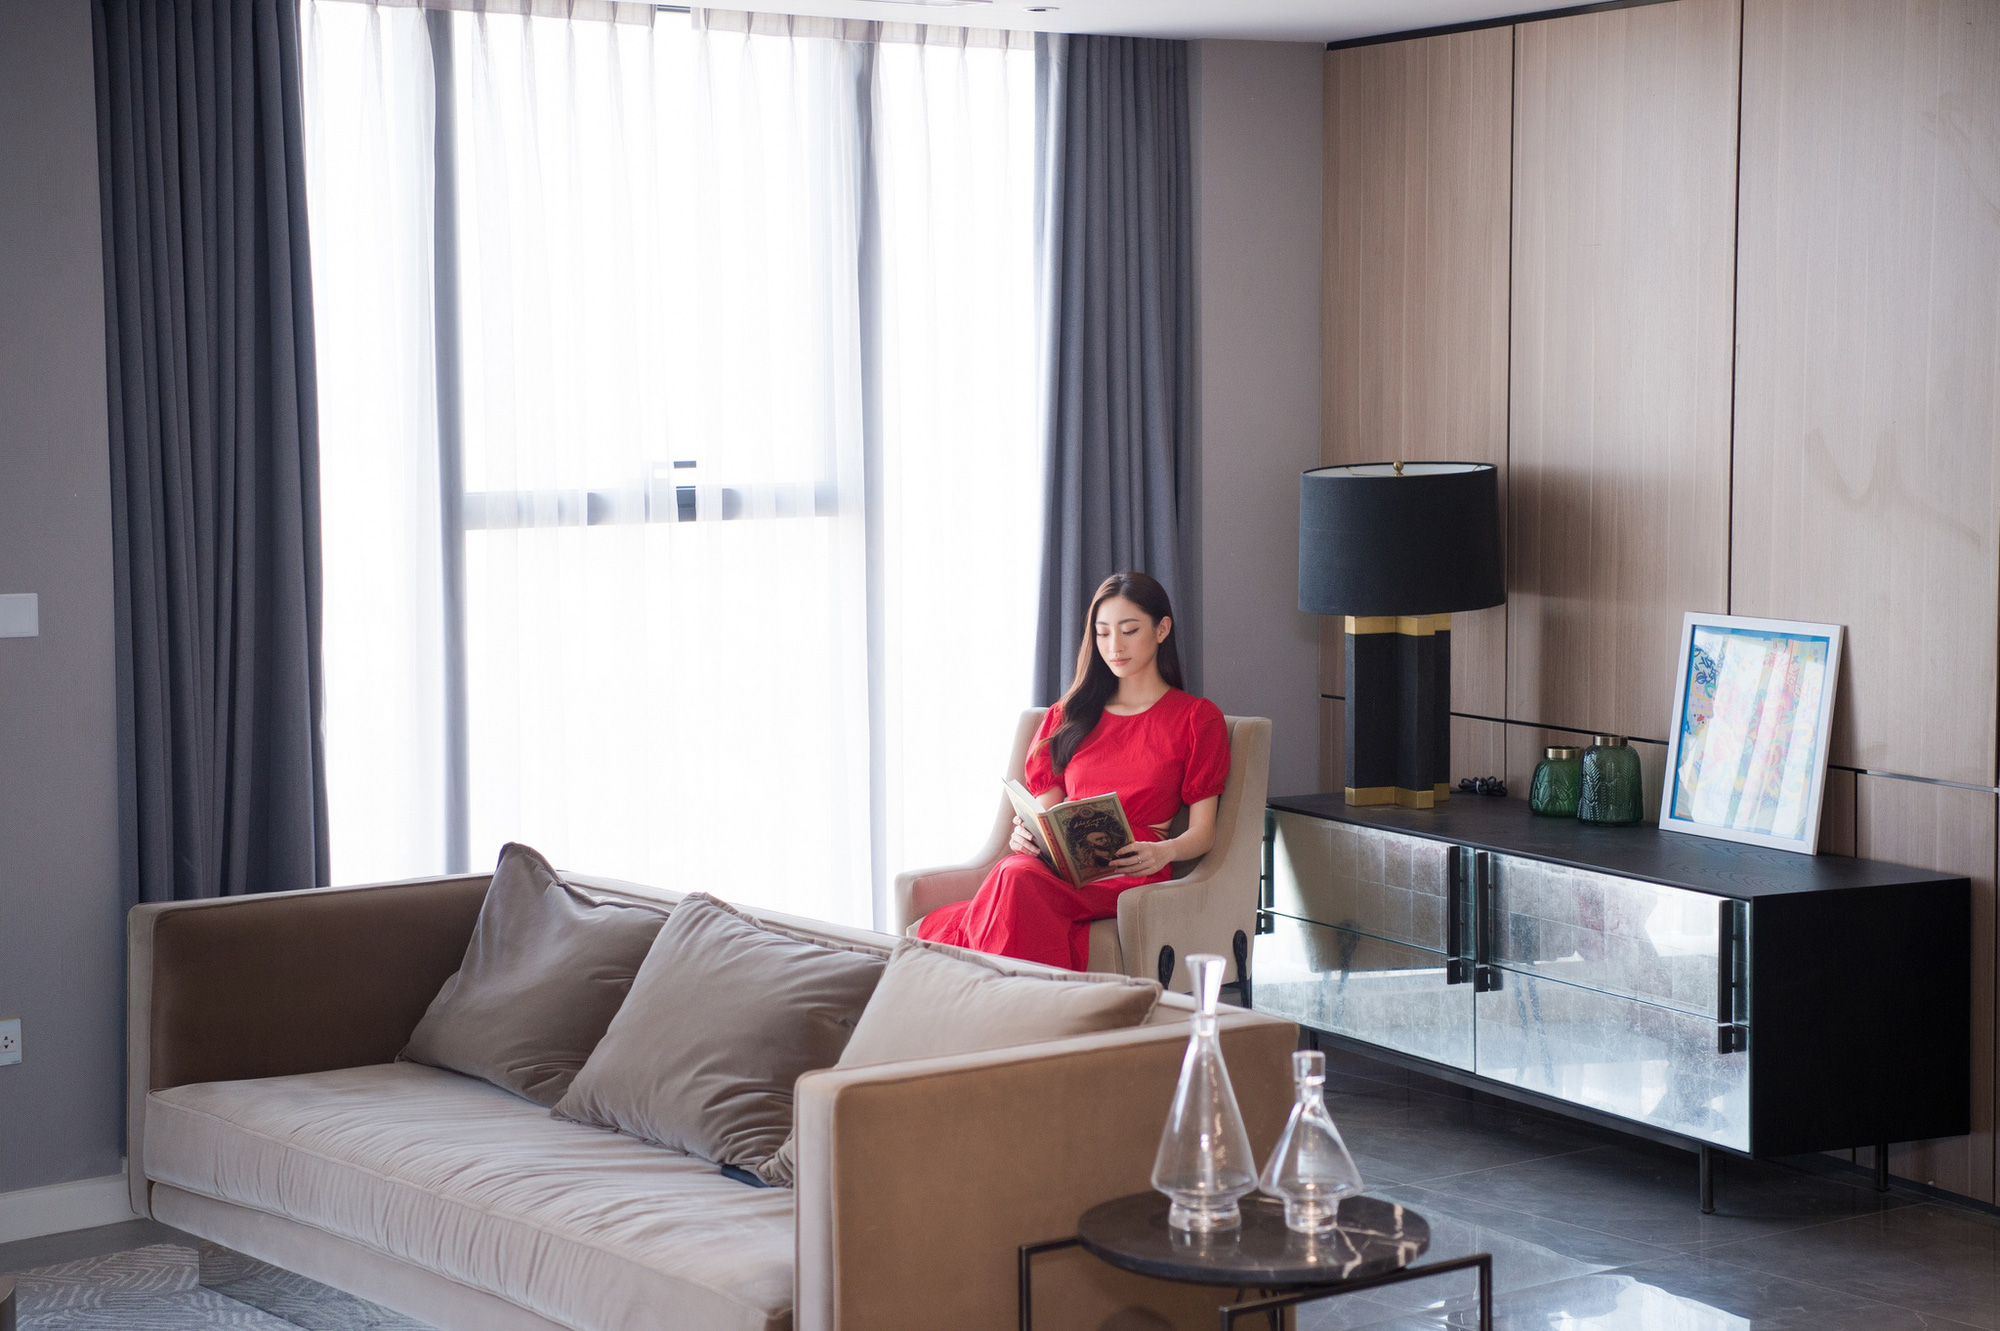 Hoa hậu Lương Thuỳ Linh khoe căn penthouse mới tậu ở tuổi 21, vị trí đắc địa bao trọn góc view đắt giá nhất Hà Nội - Ảnh 10.